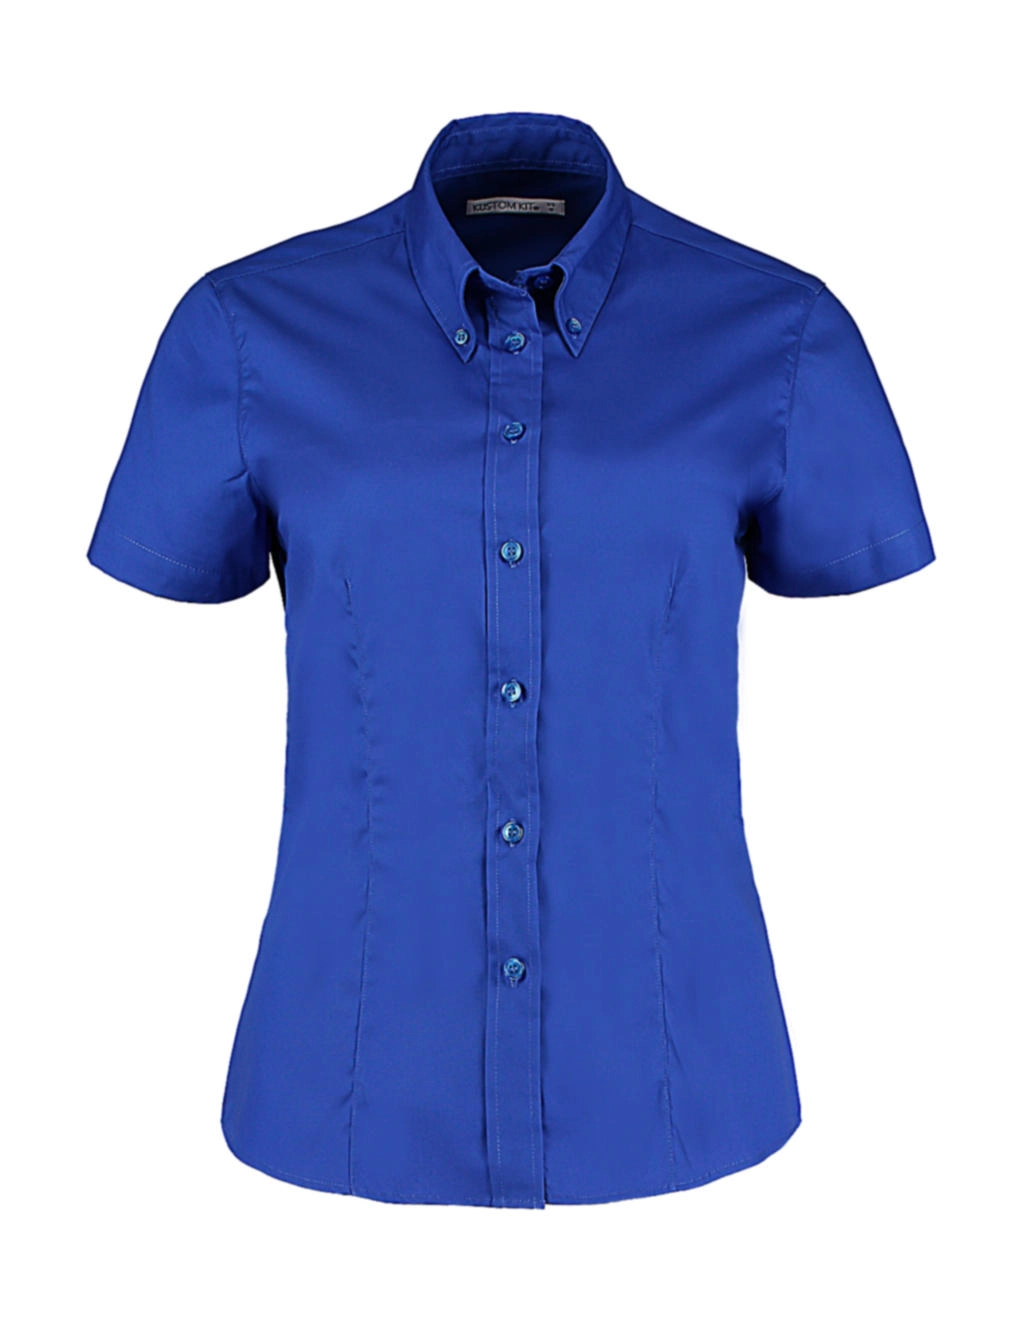 Women`s Tailored Fit Premium Oxford Shirt SSL zum Besticken und Bedrucken in der Farbe Royal mit Ihren Logo, Schriftzug oder Motiv.